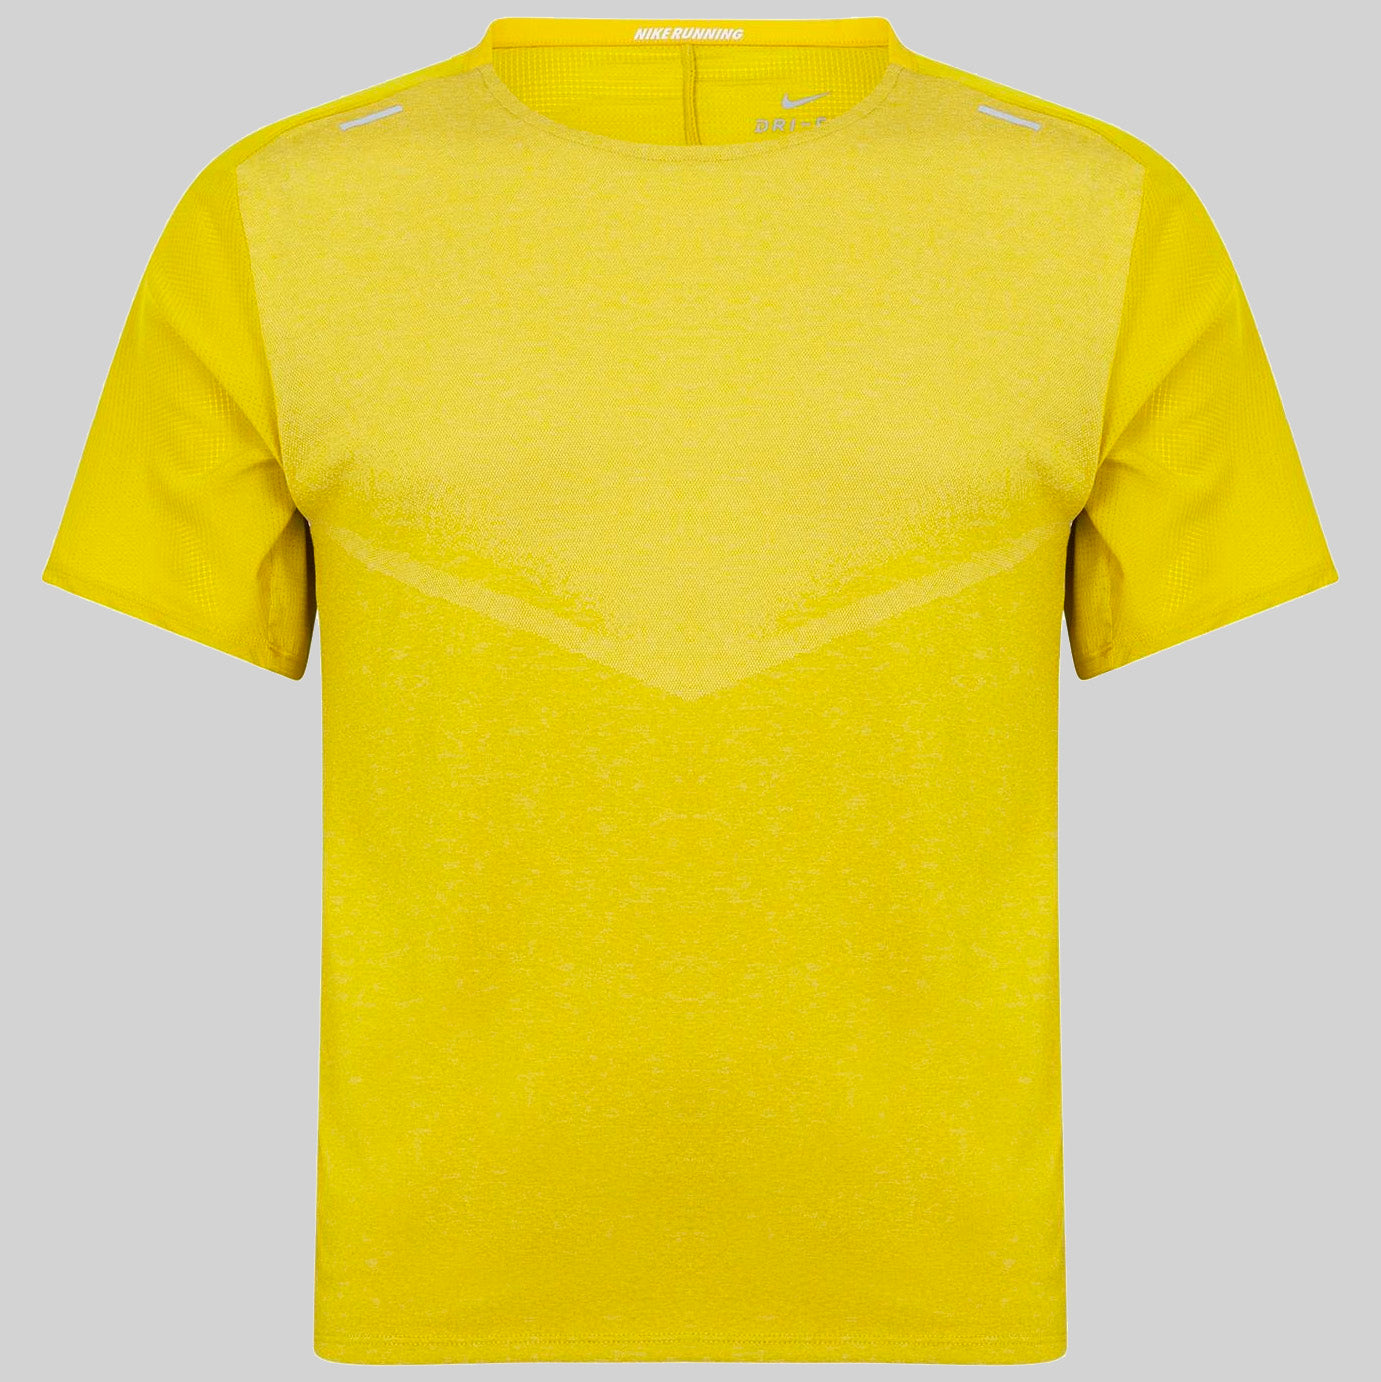 Nike Tech Ultra Short Sleeve T-Shirt